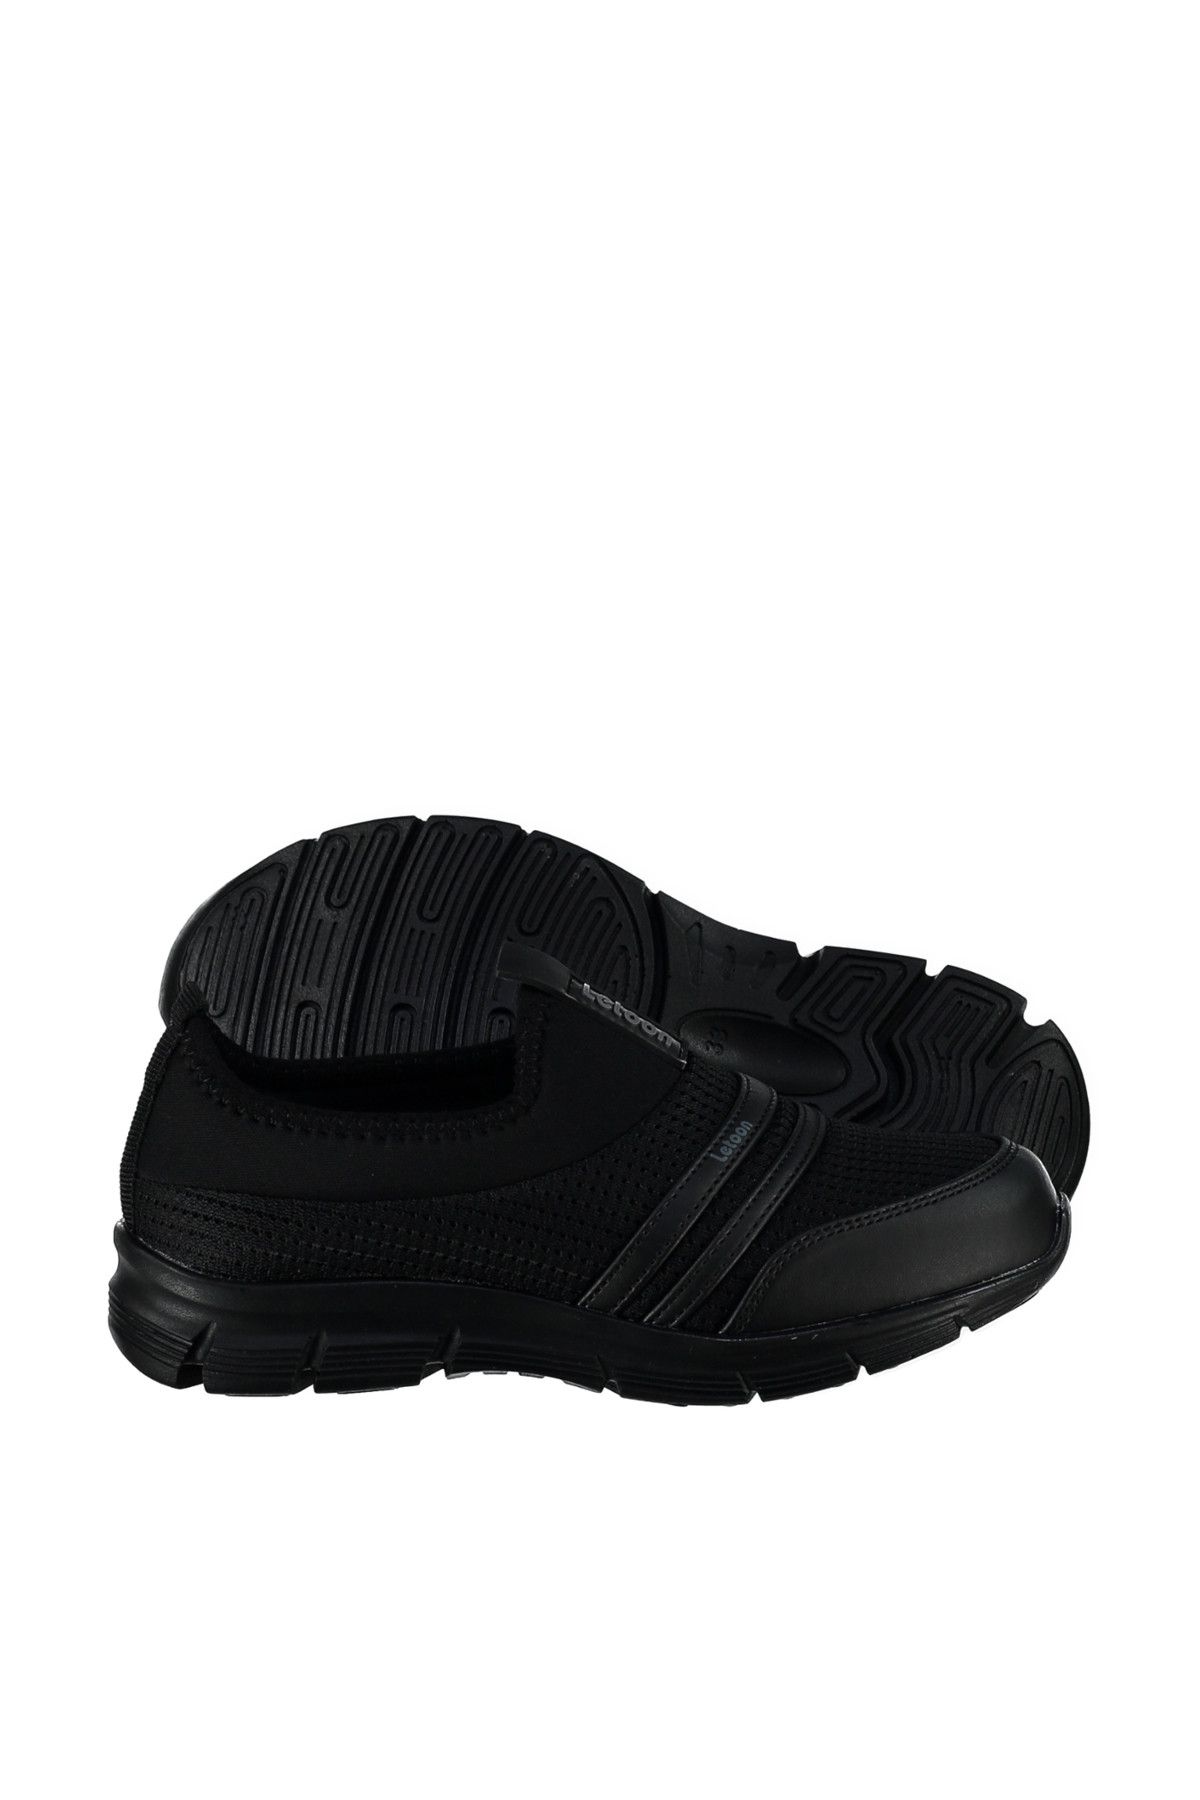 LETOON Siyah Siyah Çocuk Spor Ayakkabı - 4315 - 001F 4315